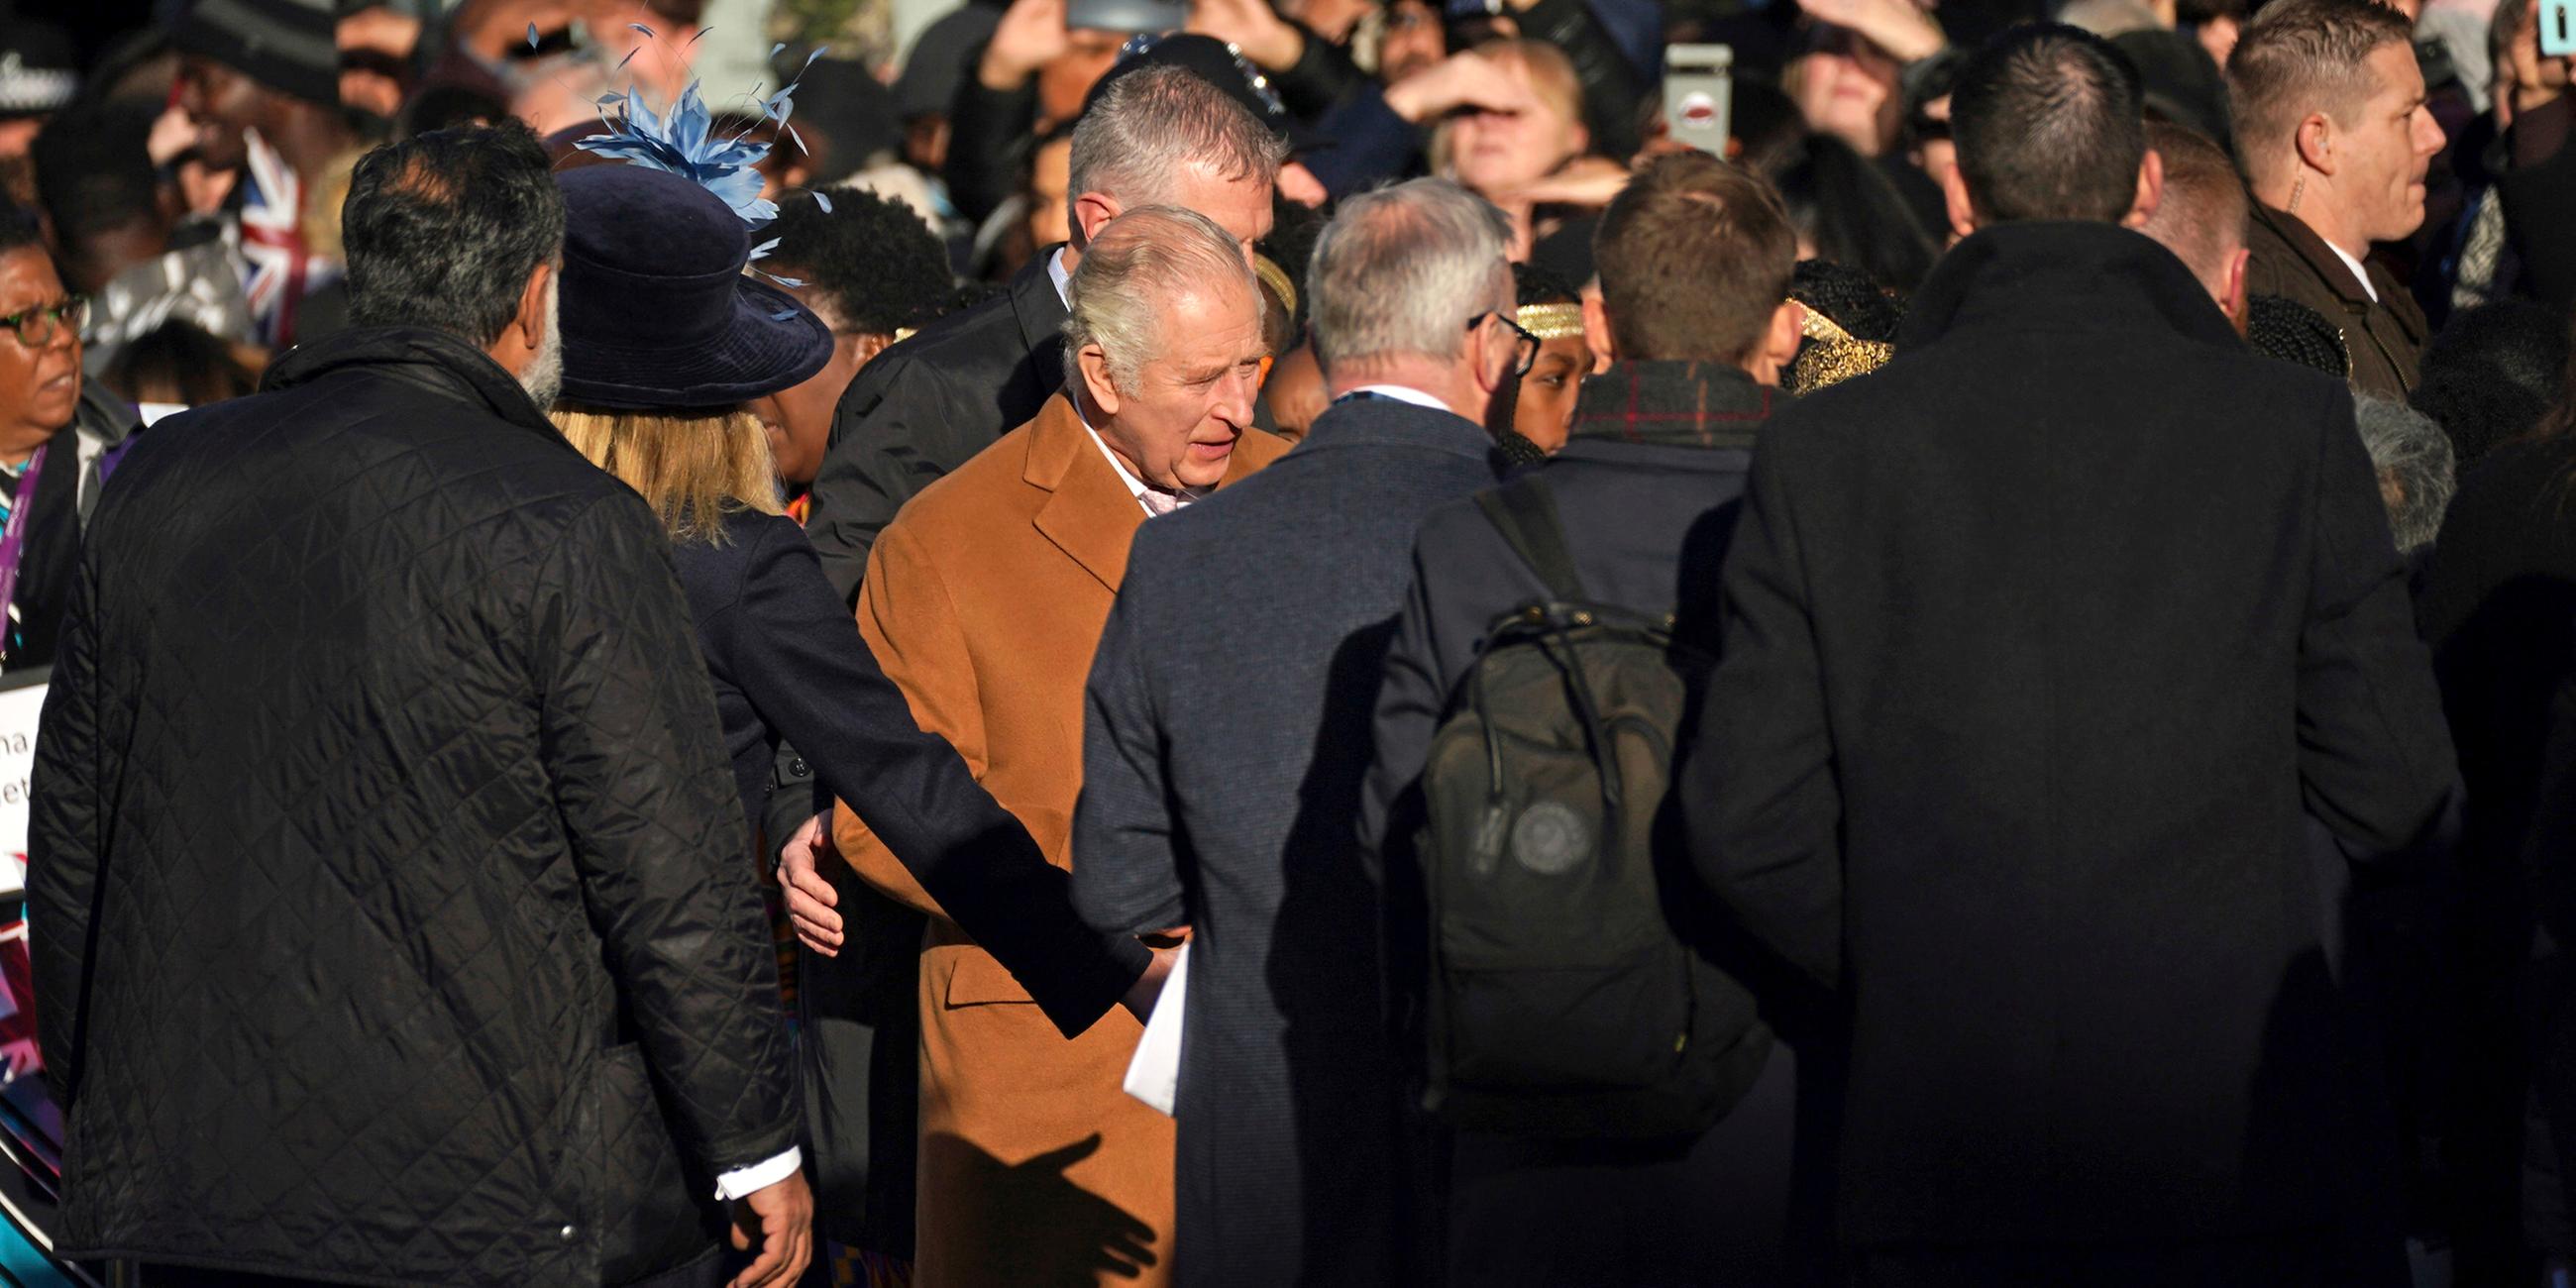 Großbritannien, Luton: Sicherheitskräfte führen König Charles III. weg von der Menschenmenge